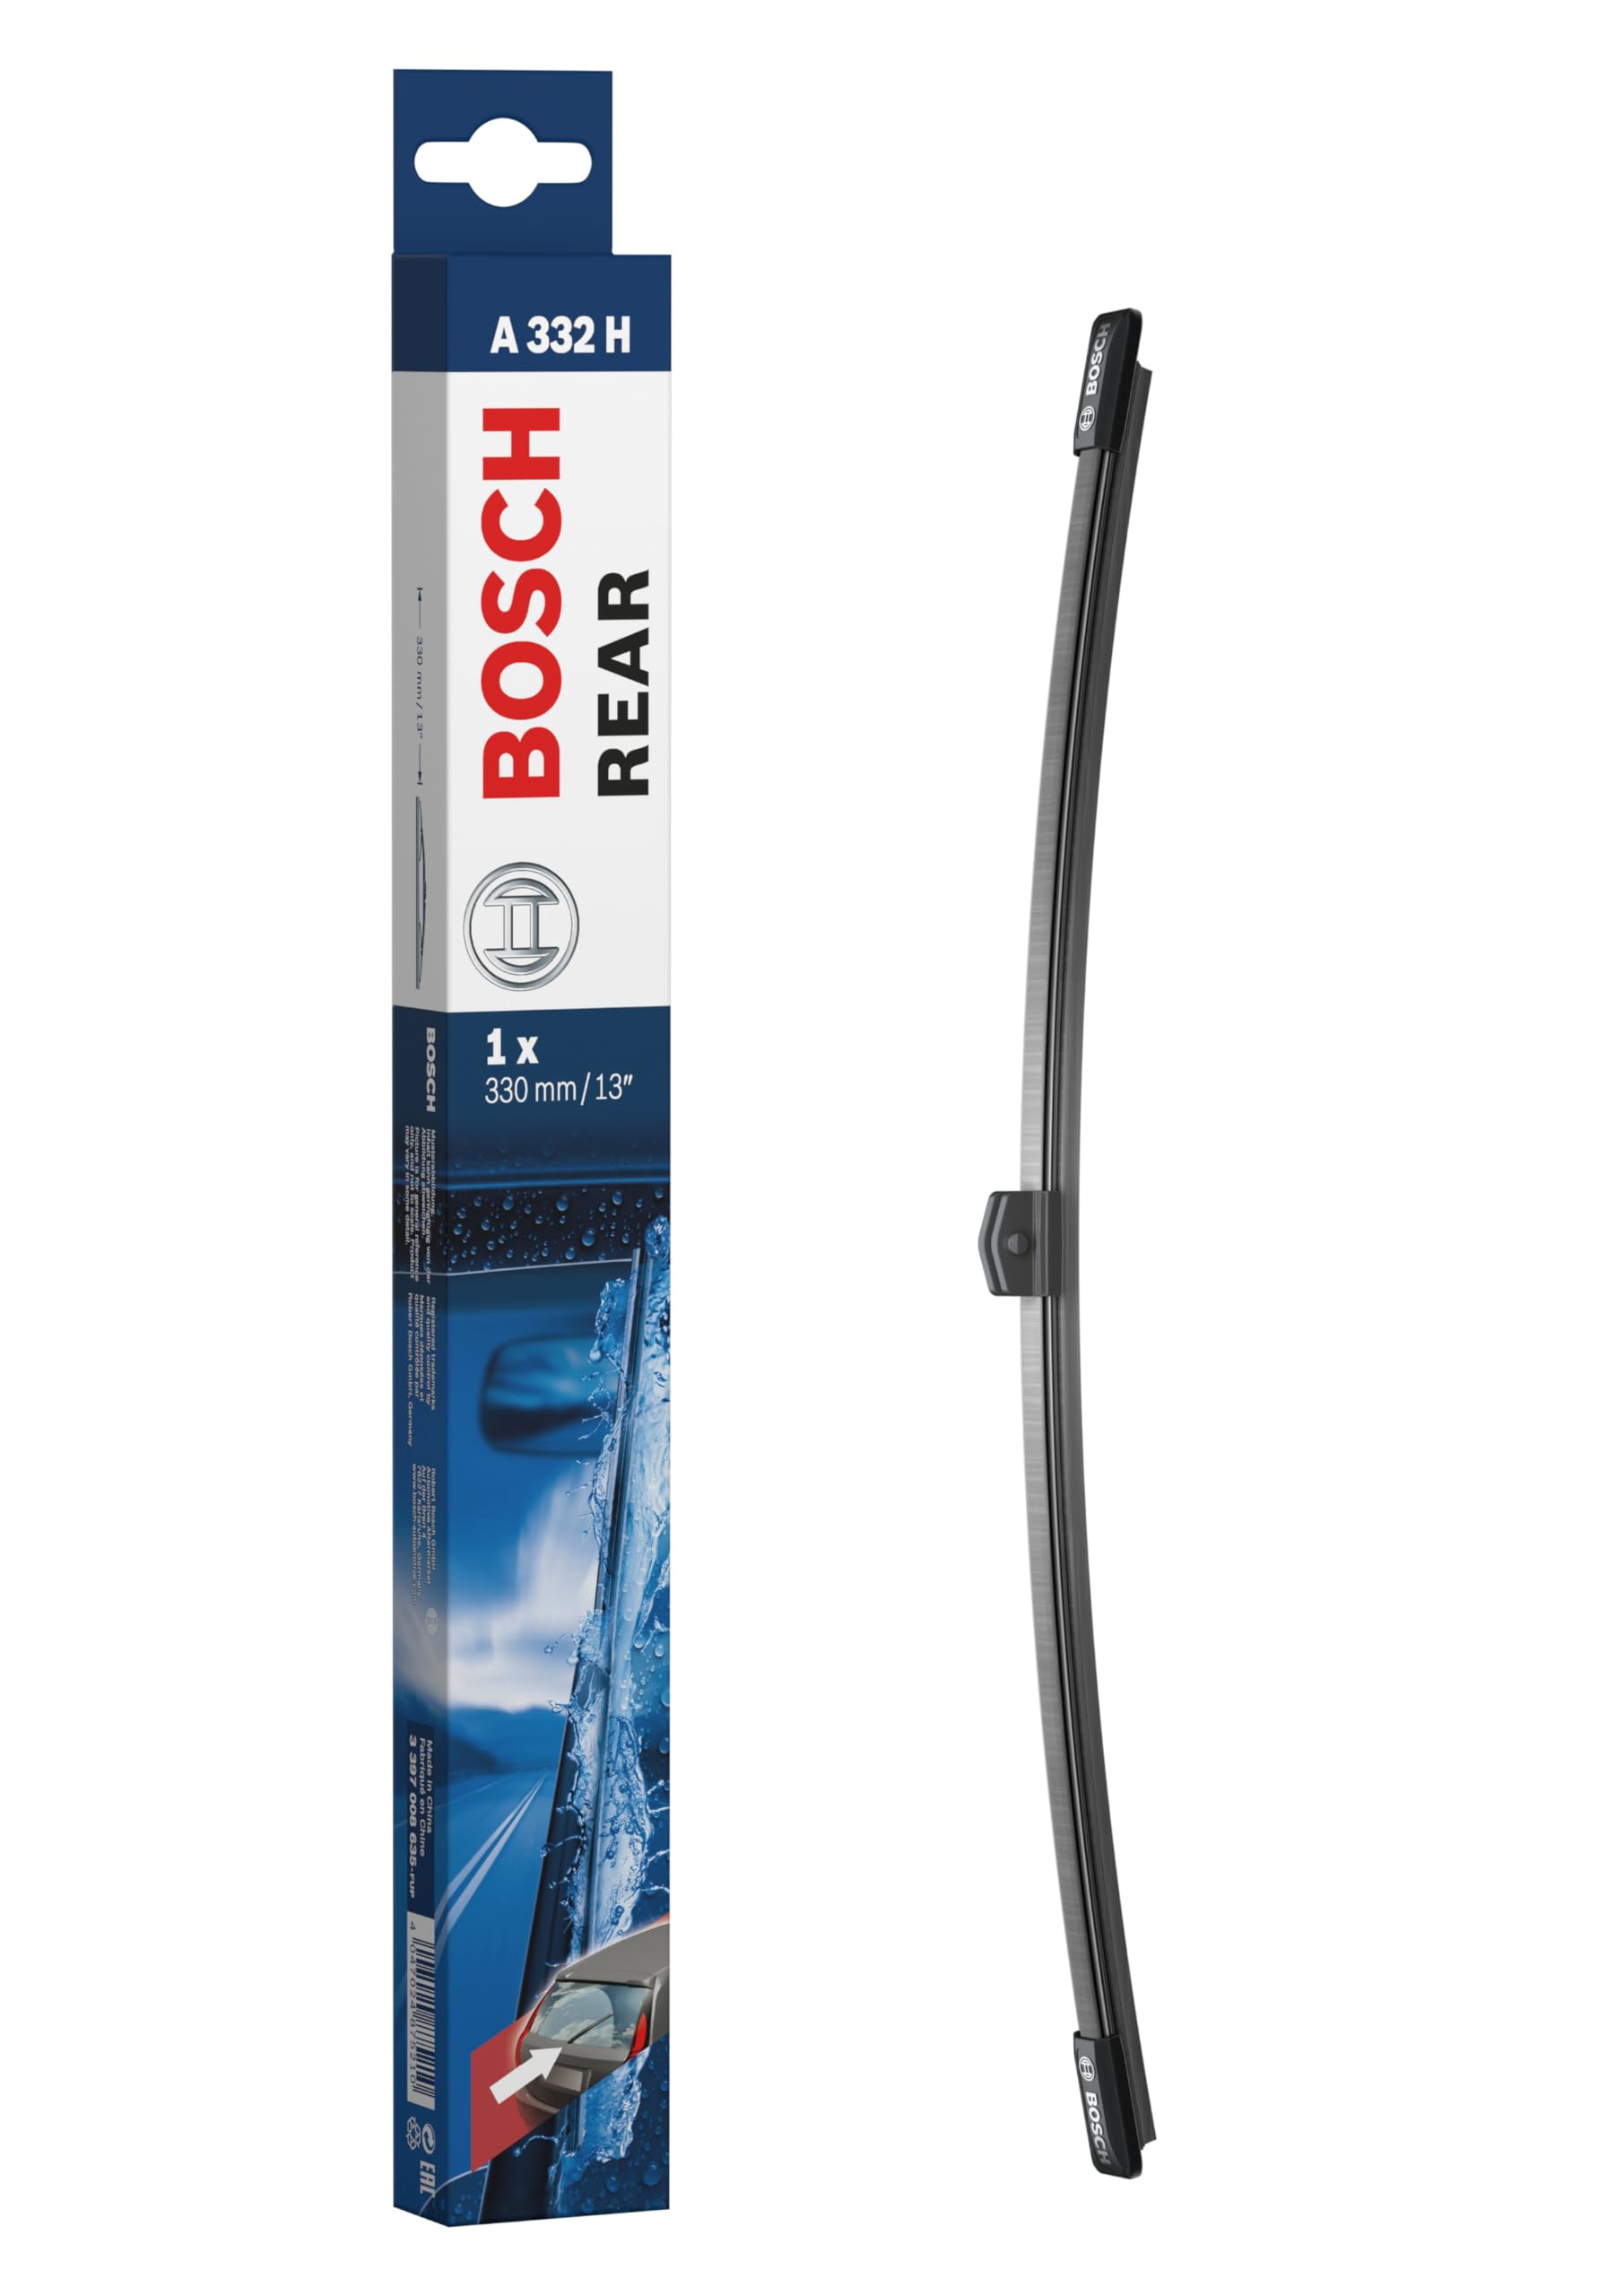 Bosch Scheibenwischer Rear A332H, Länge: 330mm – Scheibenwischer für Heckscheibe von Bosch Automotive